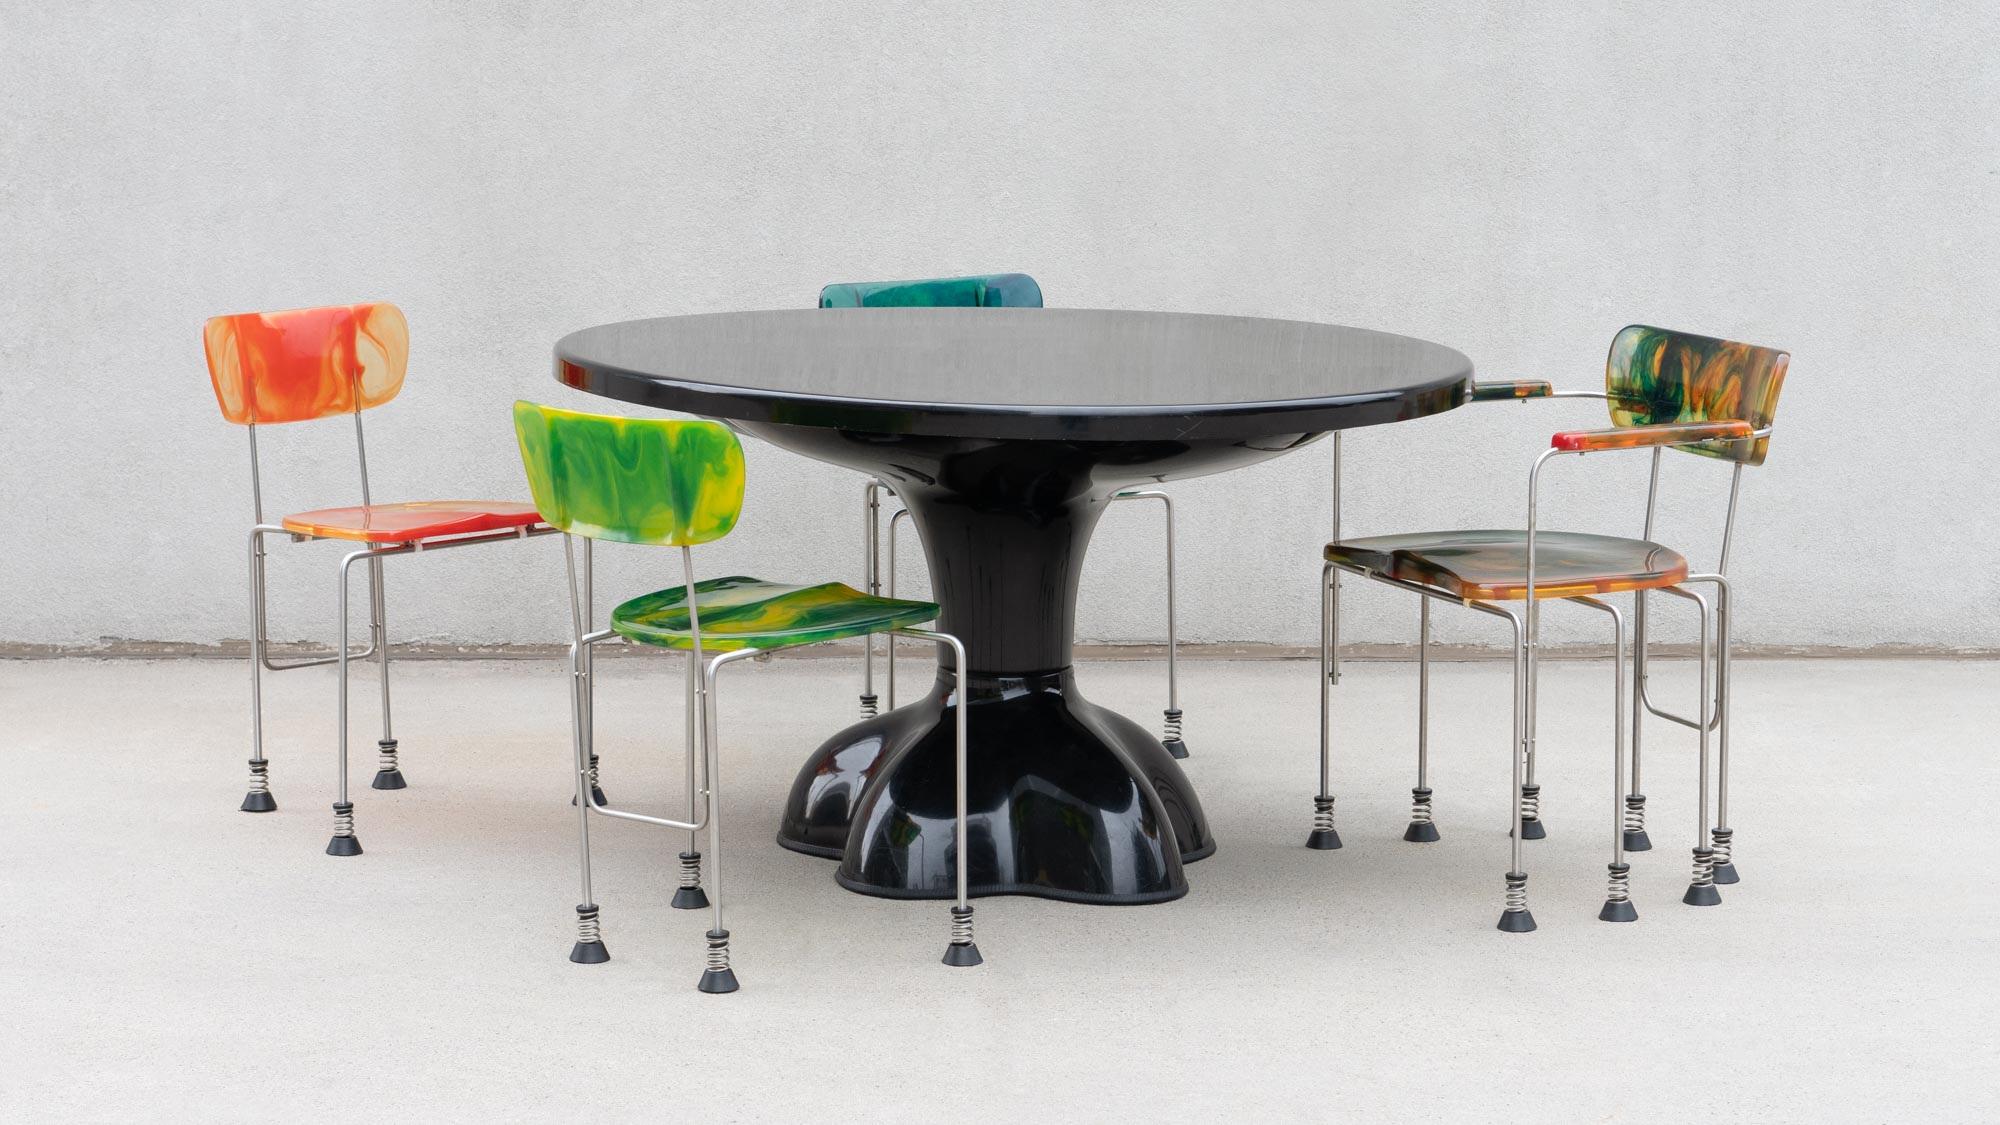 TABLE À MANGER MOLAIRE
WENDELL CASTLE C.C.1969

Table de salle à manger 'Molar' en noir, rarement vue, conçue par Wendell Castle. Fibre de verre moulée, enduite de gel et de forme amorphe. La garniture en caoutchouc d'origine est présente sur le